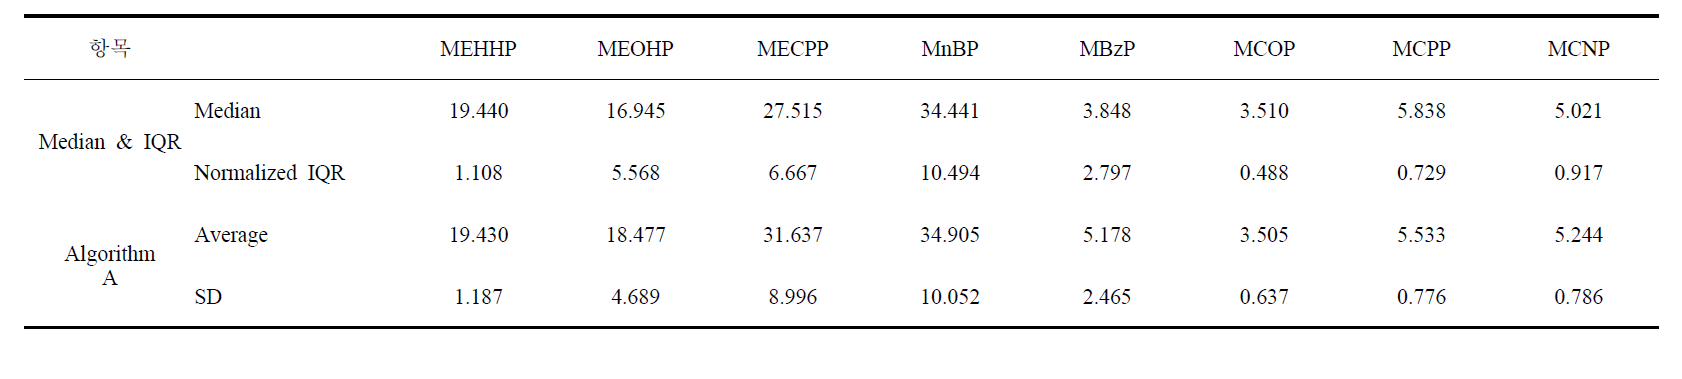 로버스트 통계방법별 평균값 및 표준편차 비교 (저농도)